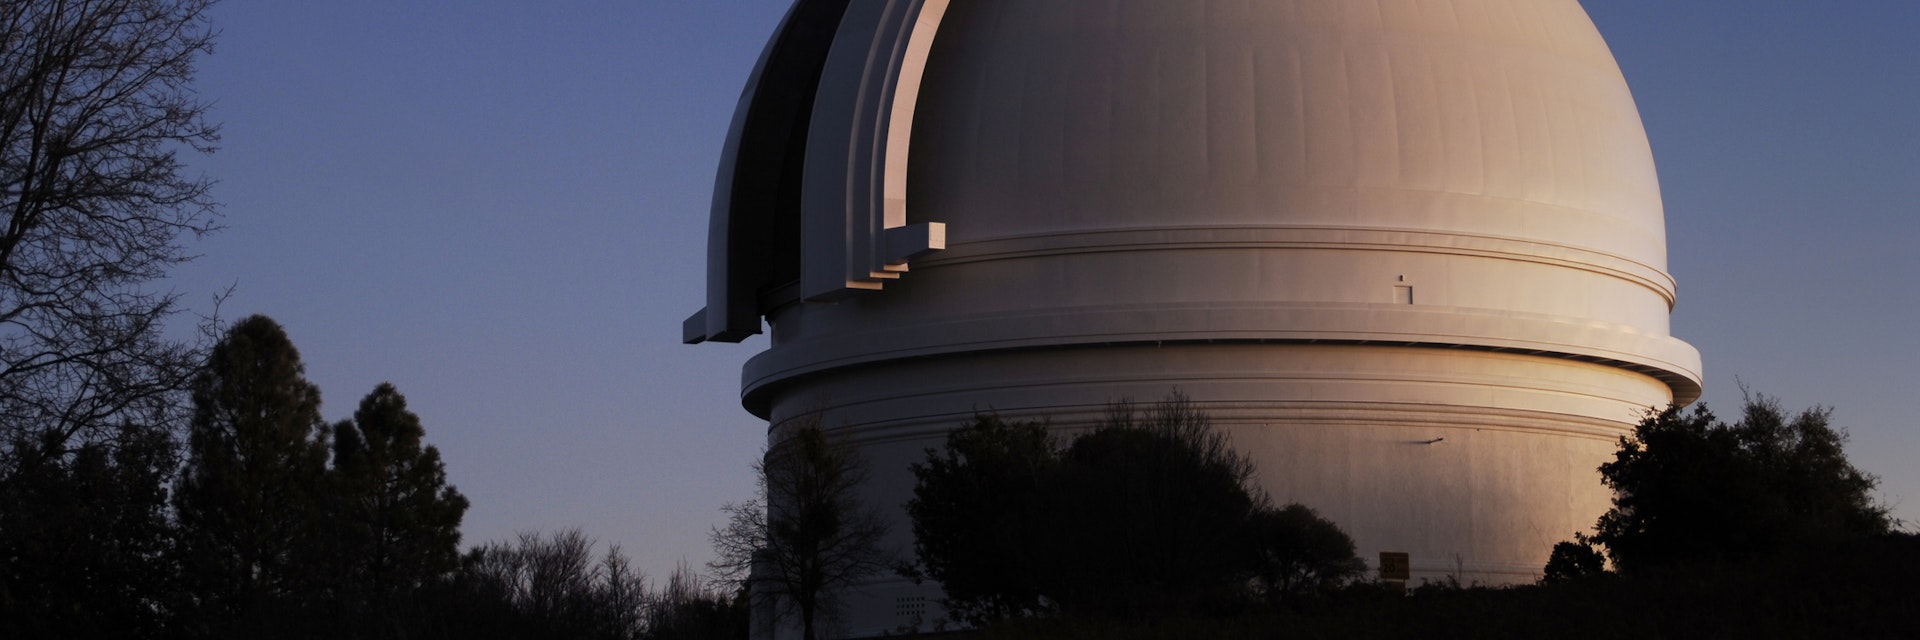 Mr. Palomar Observatory at dusk
90951596
Mt Palomar, astrophysics, cosmology